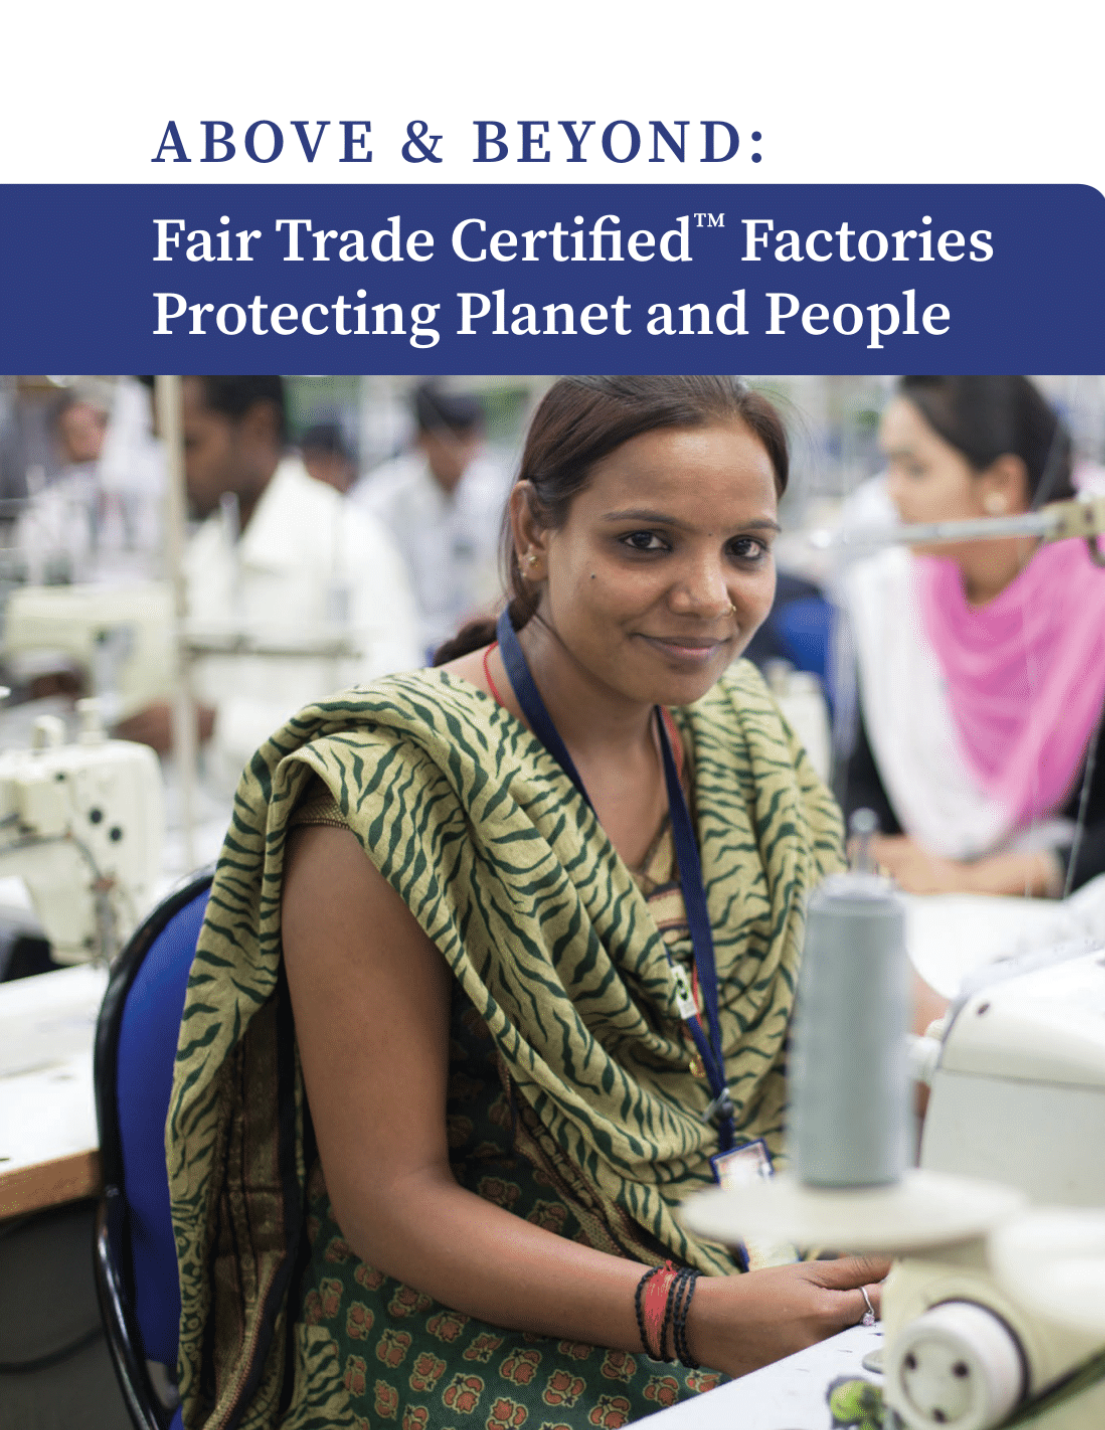 Las fábricas Fair Trade Certified protegen el planeta y a la humanidad - Portada del informe